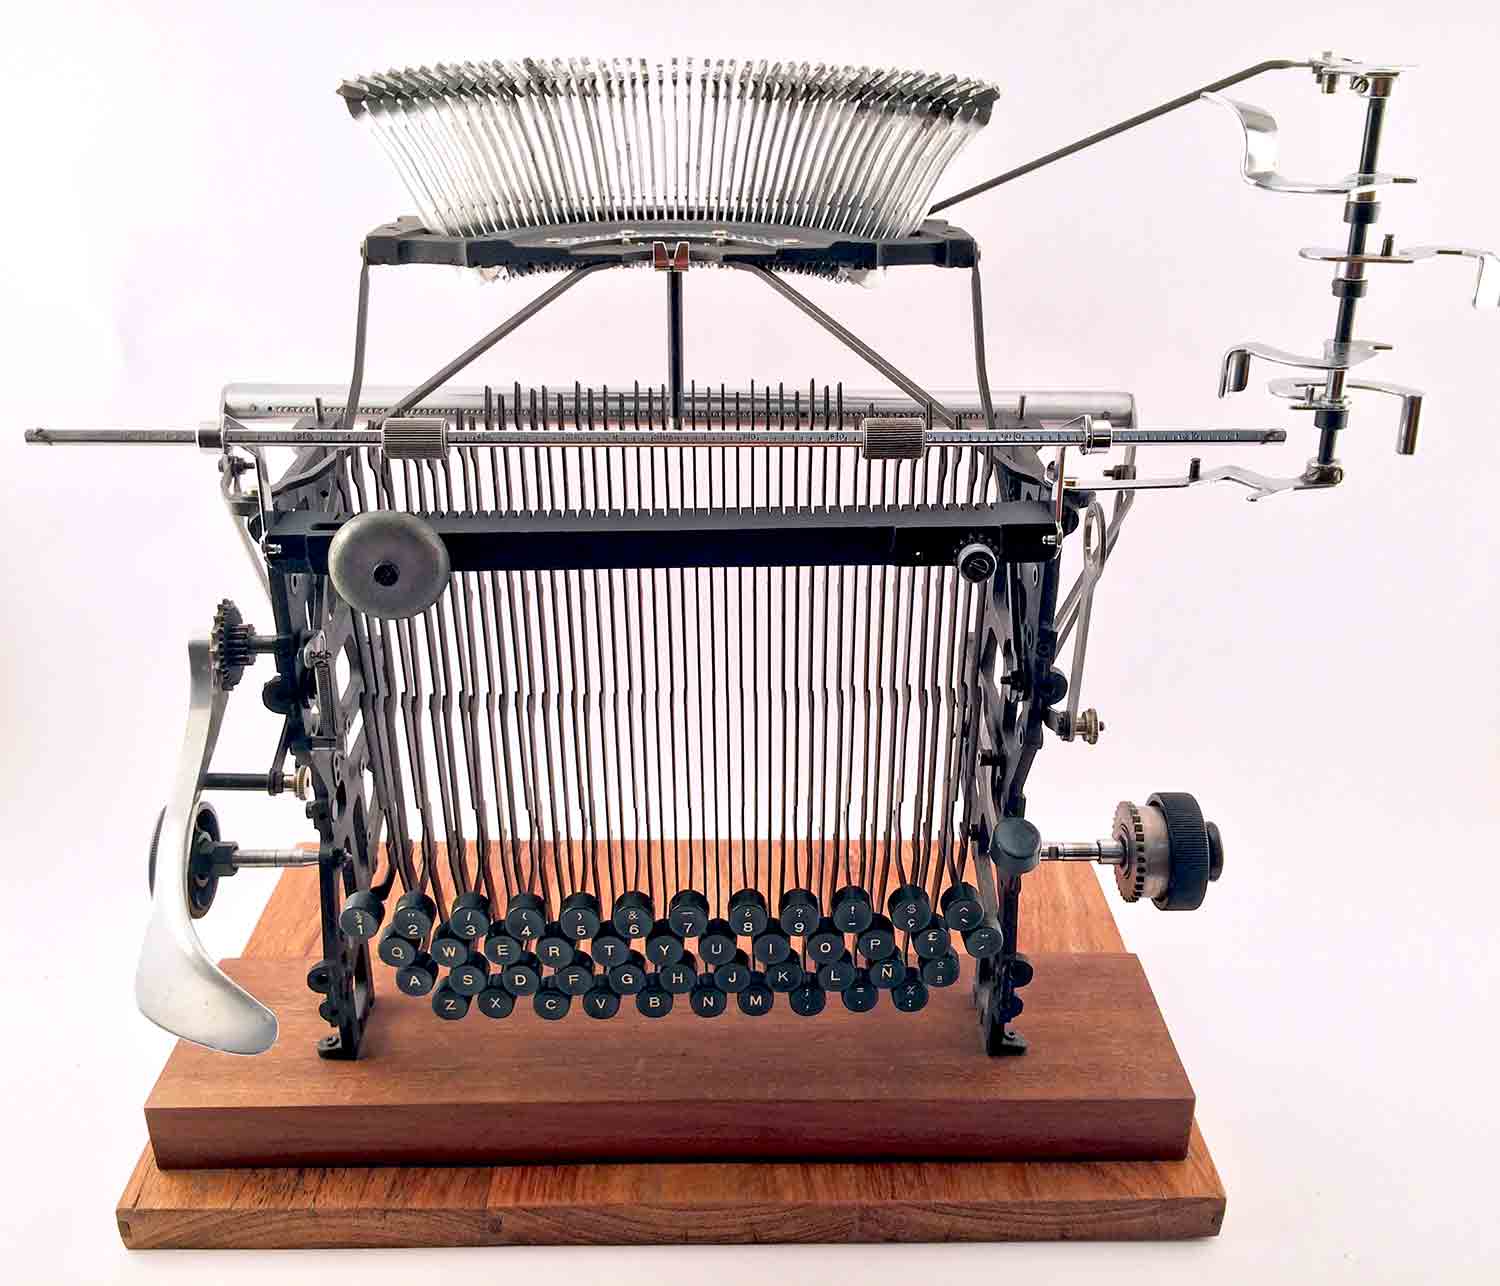 Escultura d'una interpretació d’una màquina d’escriure Olivetti Lexicon 80